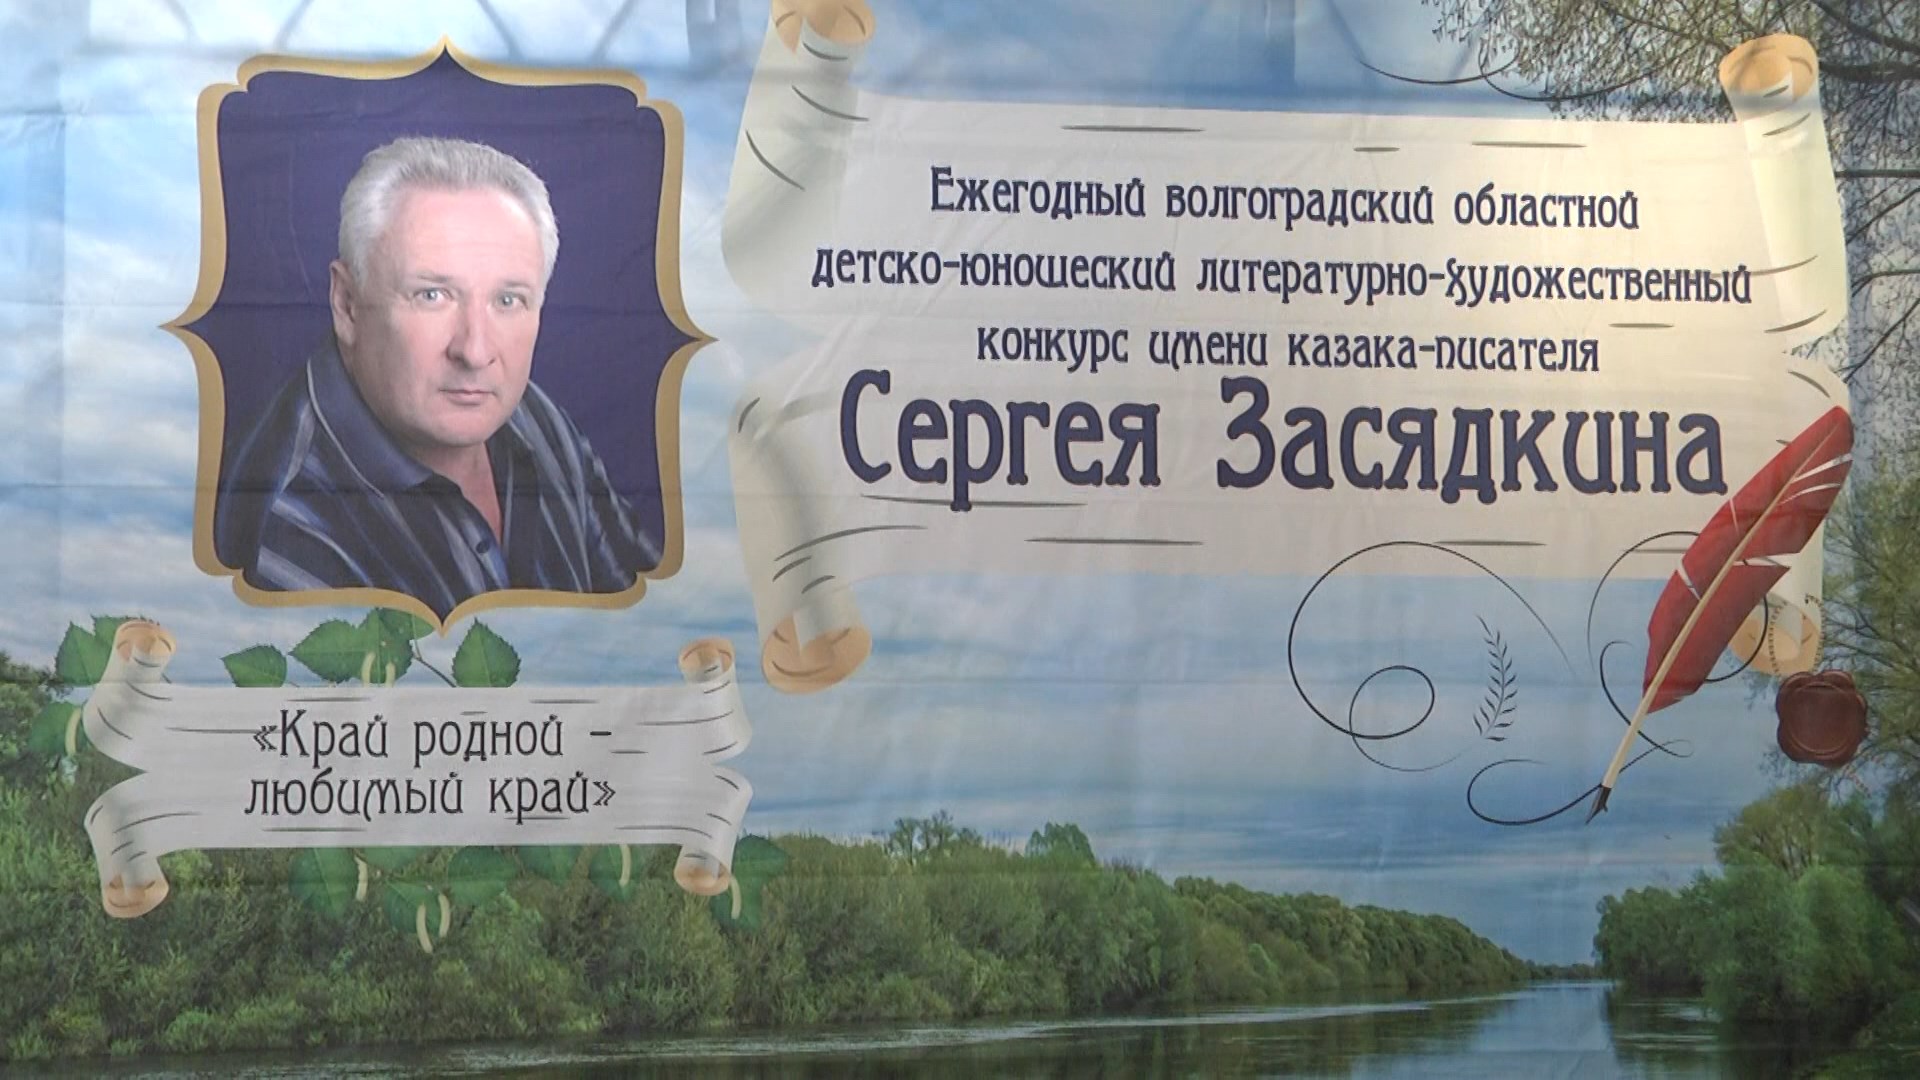 В Волгограде подвели итоги литературно-художественного конкурса имени казака-писателя Сергея Засядкина